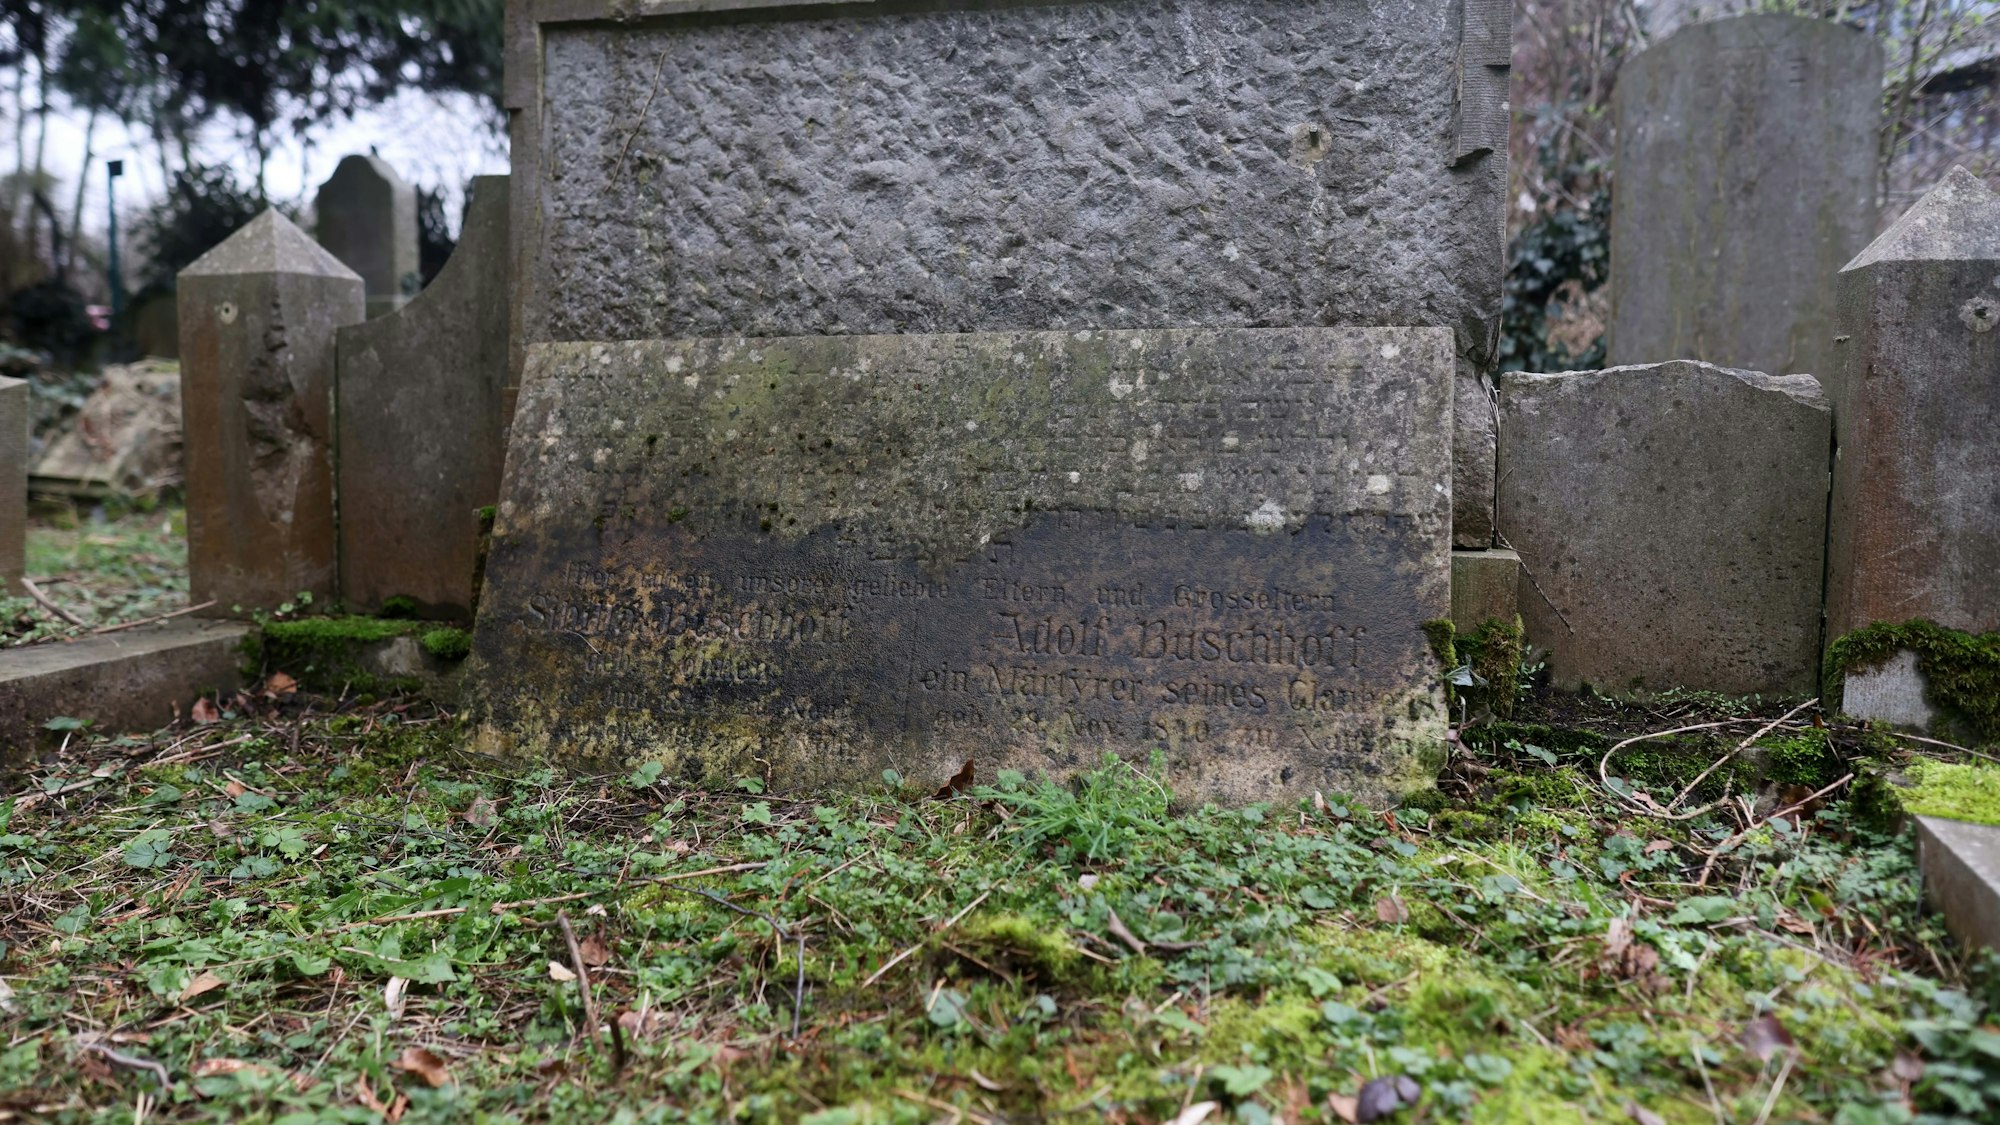 Letzte Ruhestätte: Auf dem jüdischen Friedhof in Deutz liegt Adolf Buschhoff neben seiner Frau bestattet.